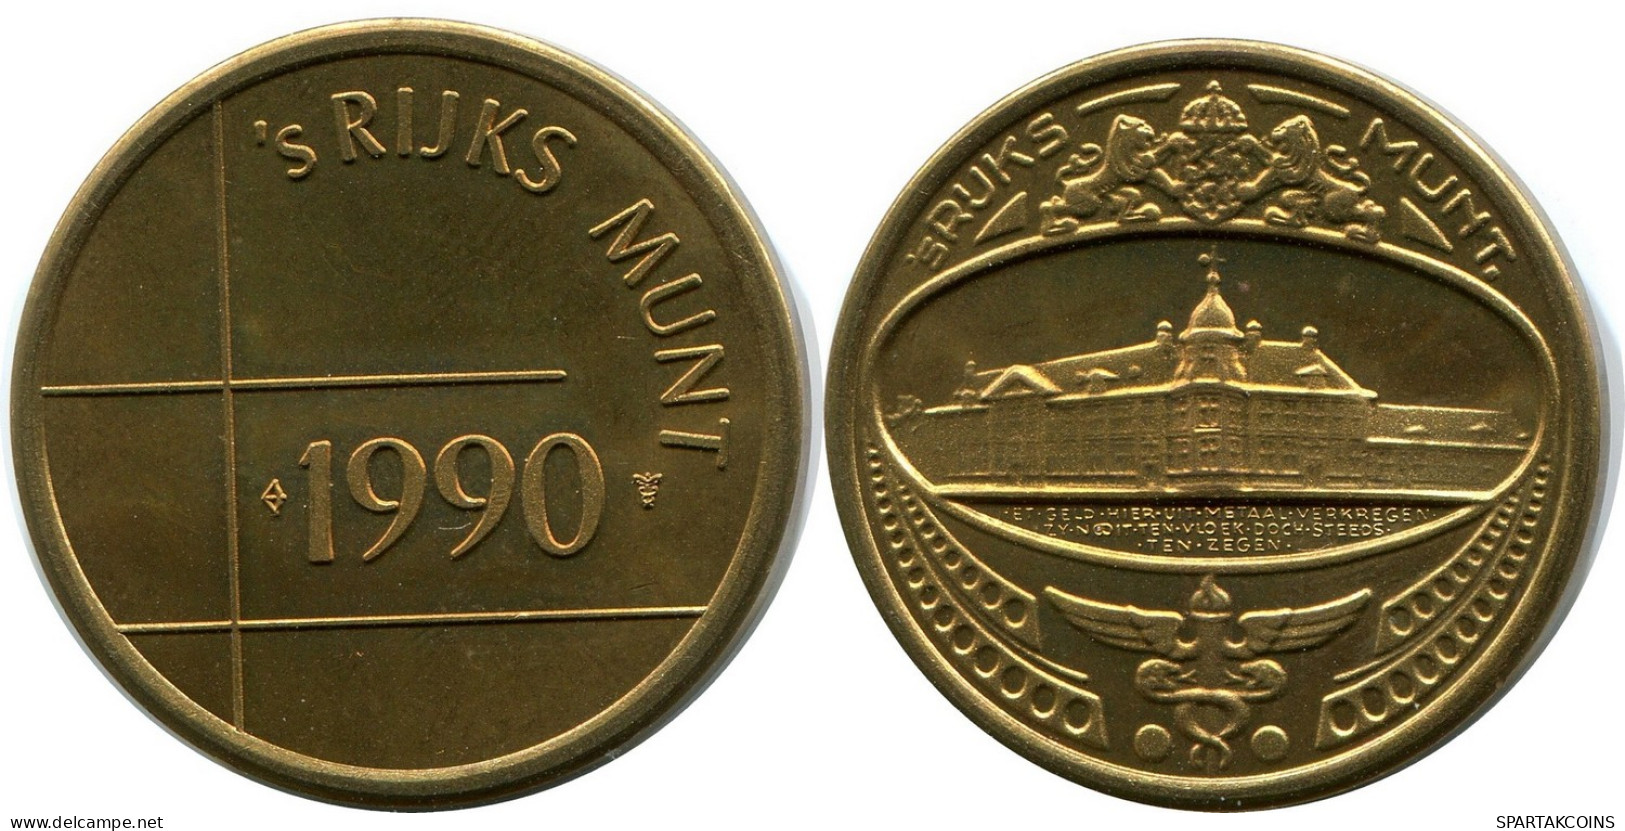 1990 ROYAL DUTCH MINT SET TOKEN NIEDERLANDE MINT (From BU Mint Set) #AH029.D - Jahressets & Polierte Platten